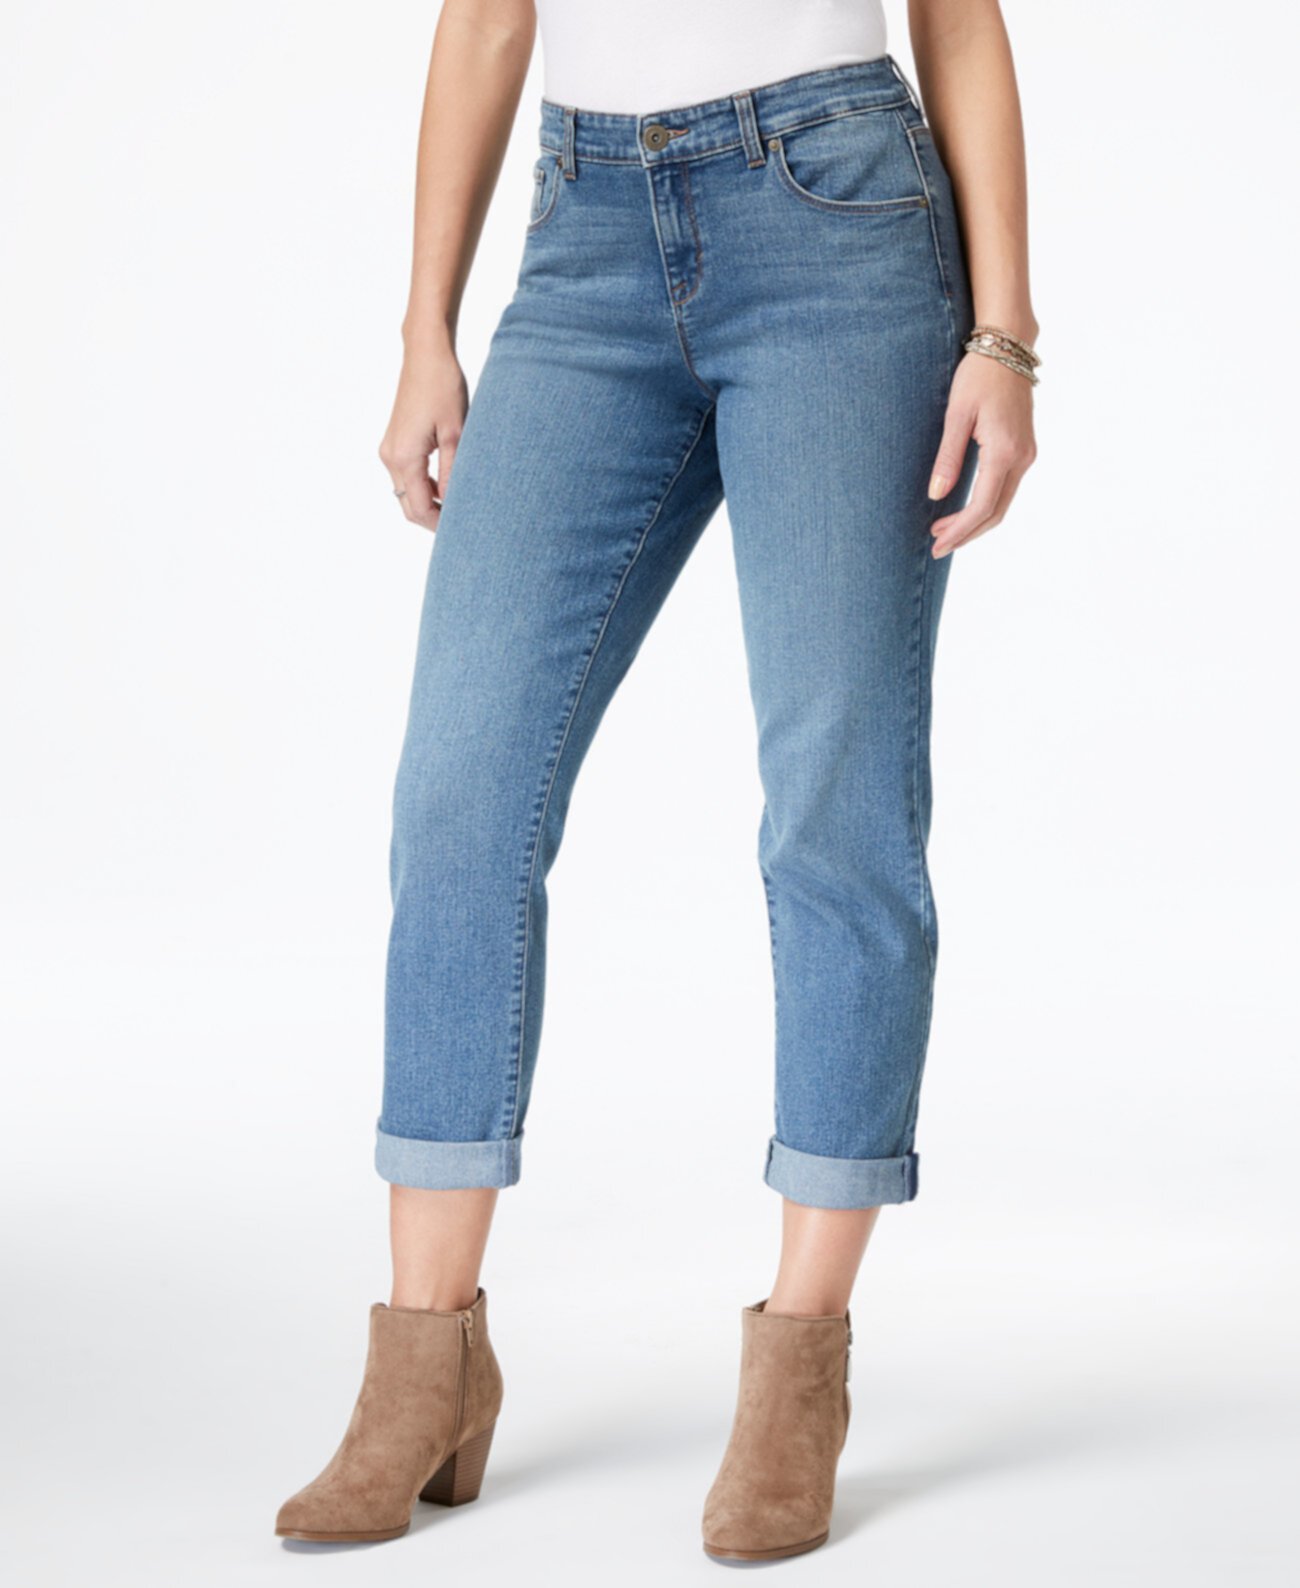 Пышные облегающие джинсы-бойфренды, созданные для Macy's Style & Co